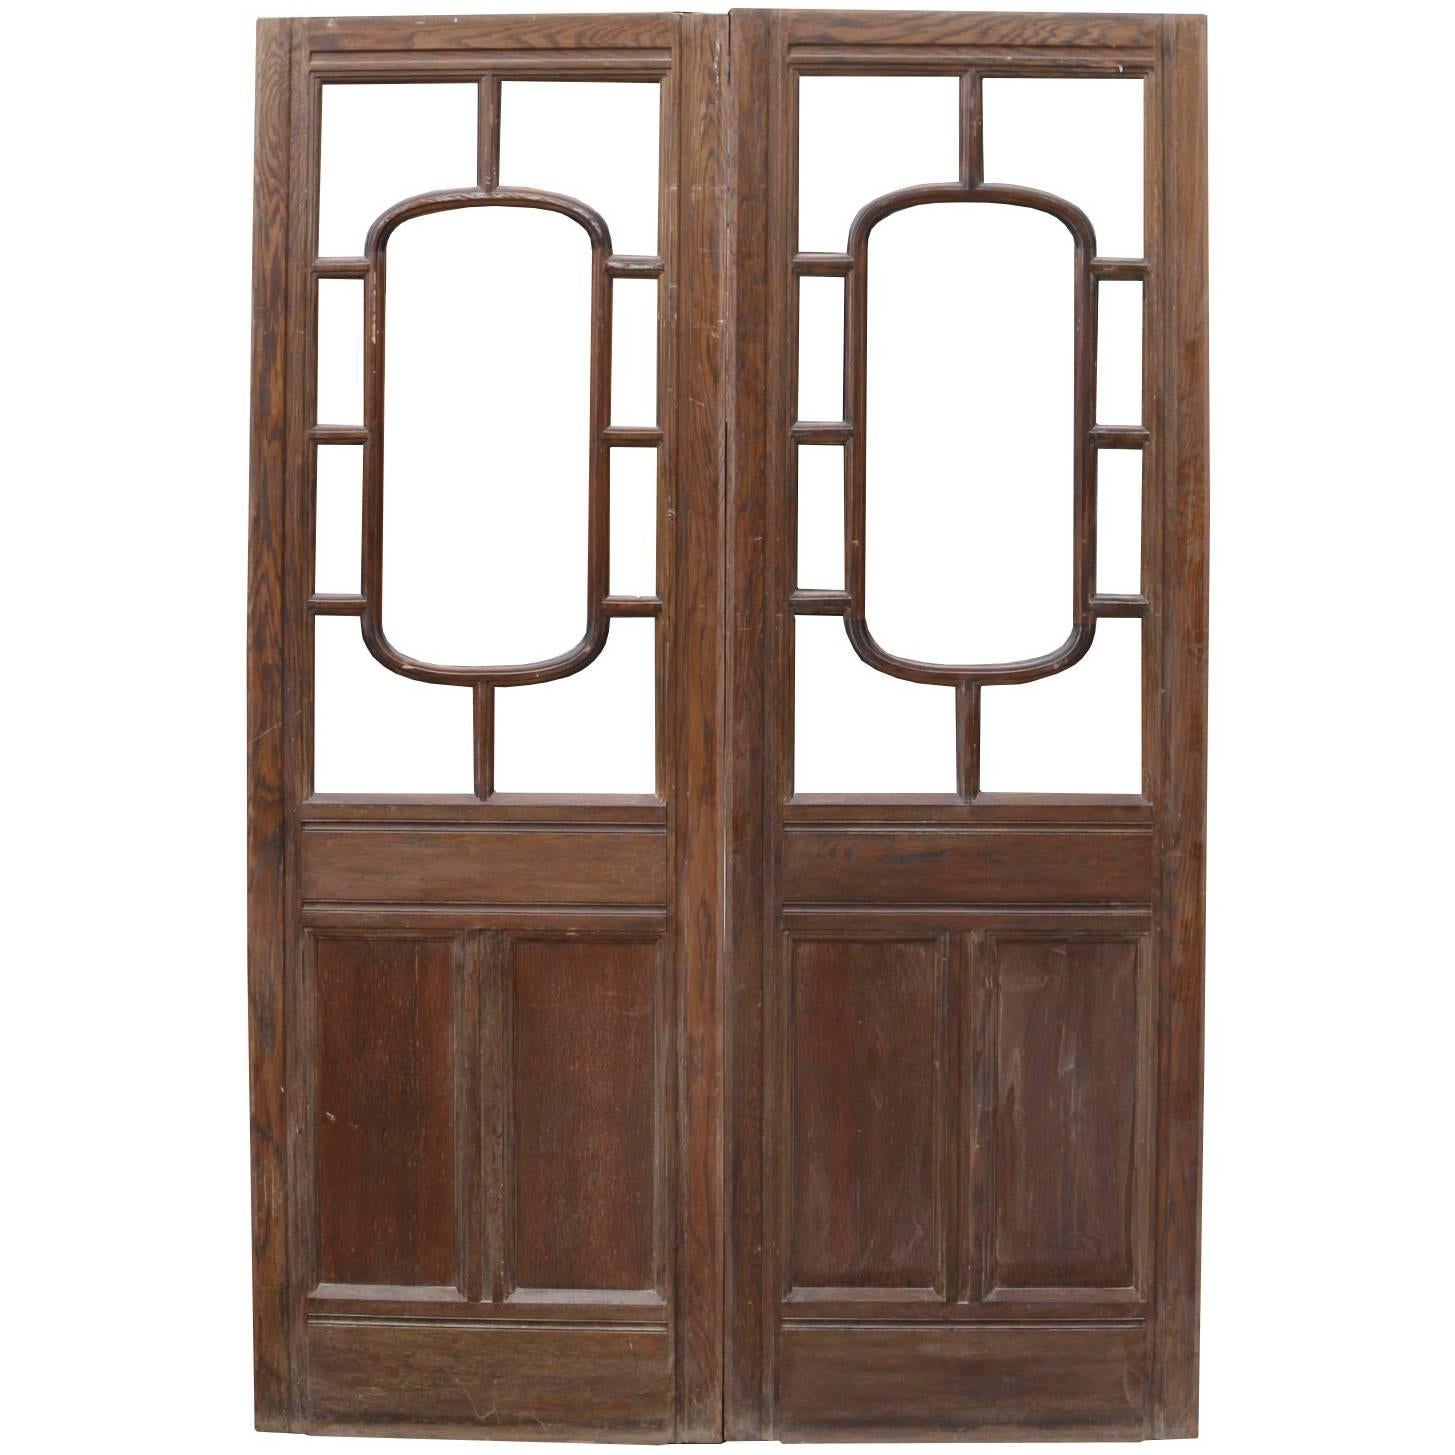 Early 20th Century Glazed Oak Double Doors